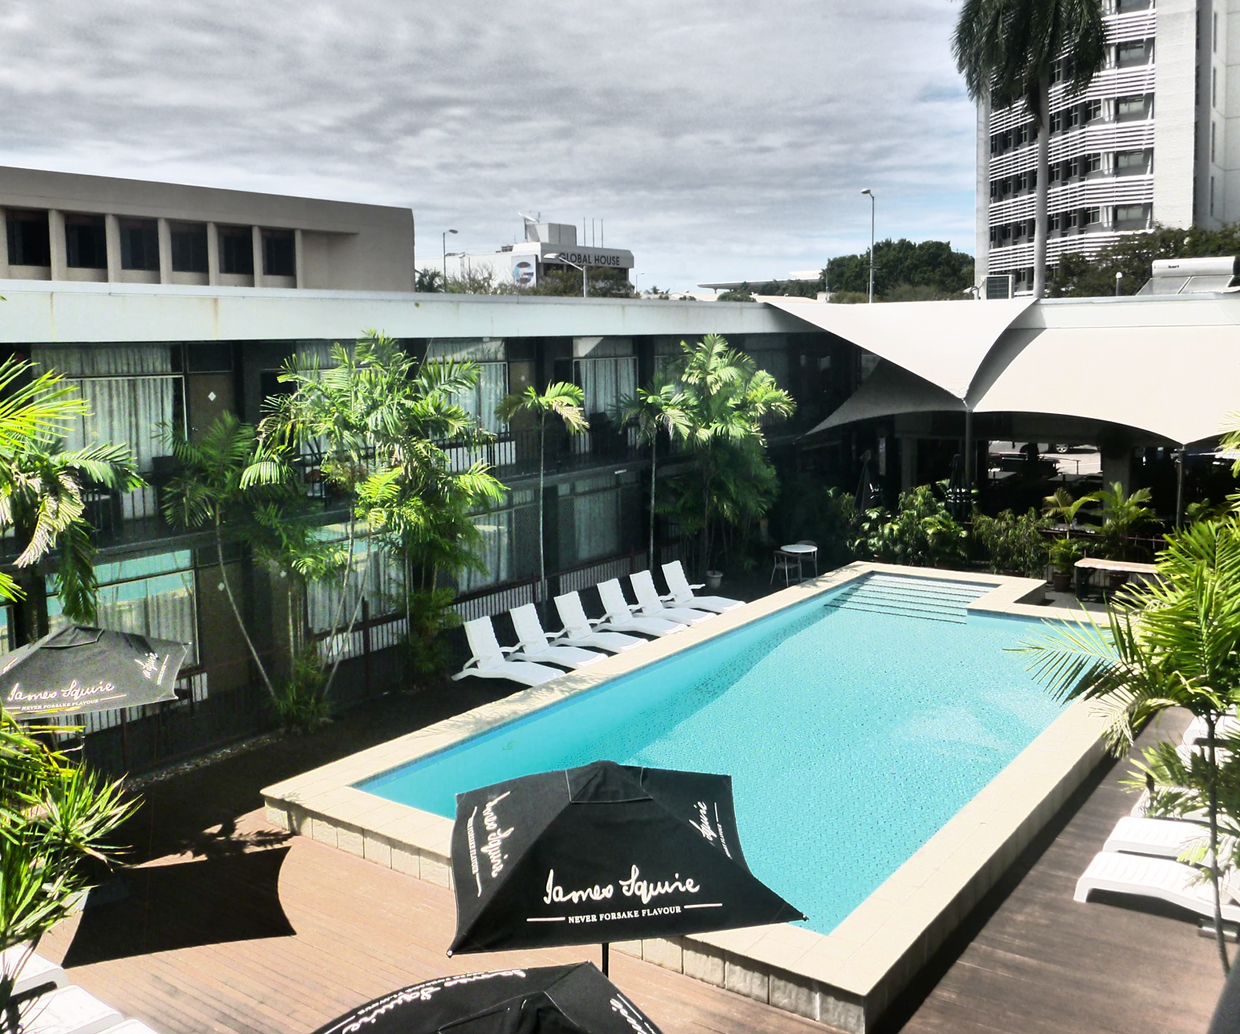 pool area of darwin hotel